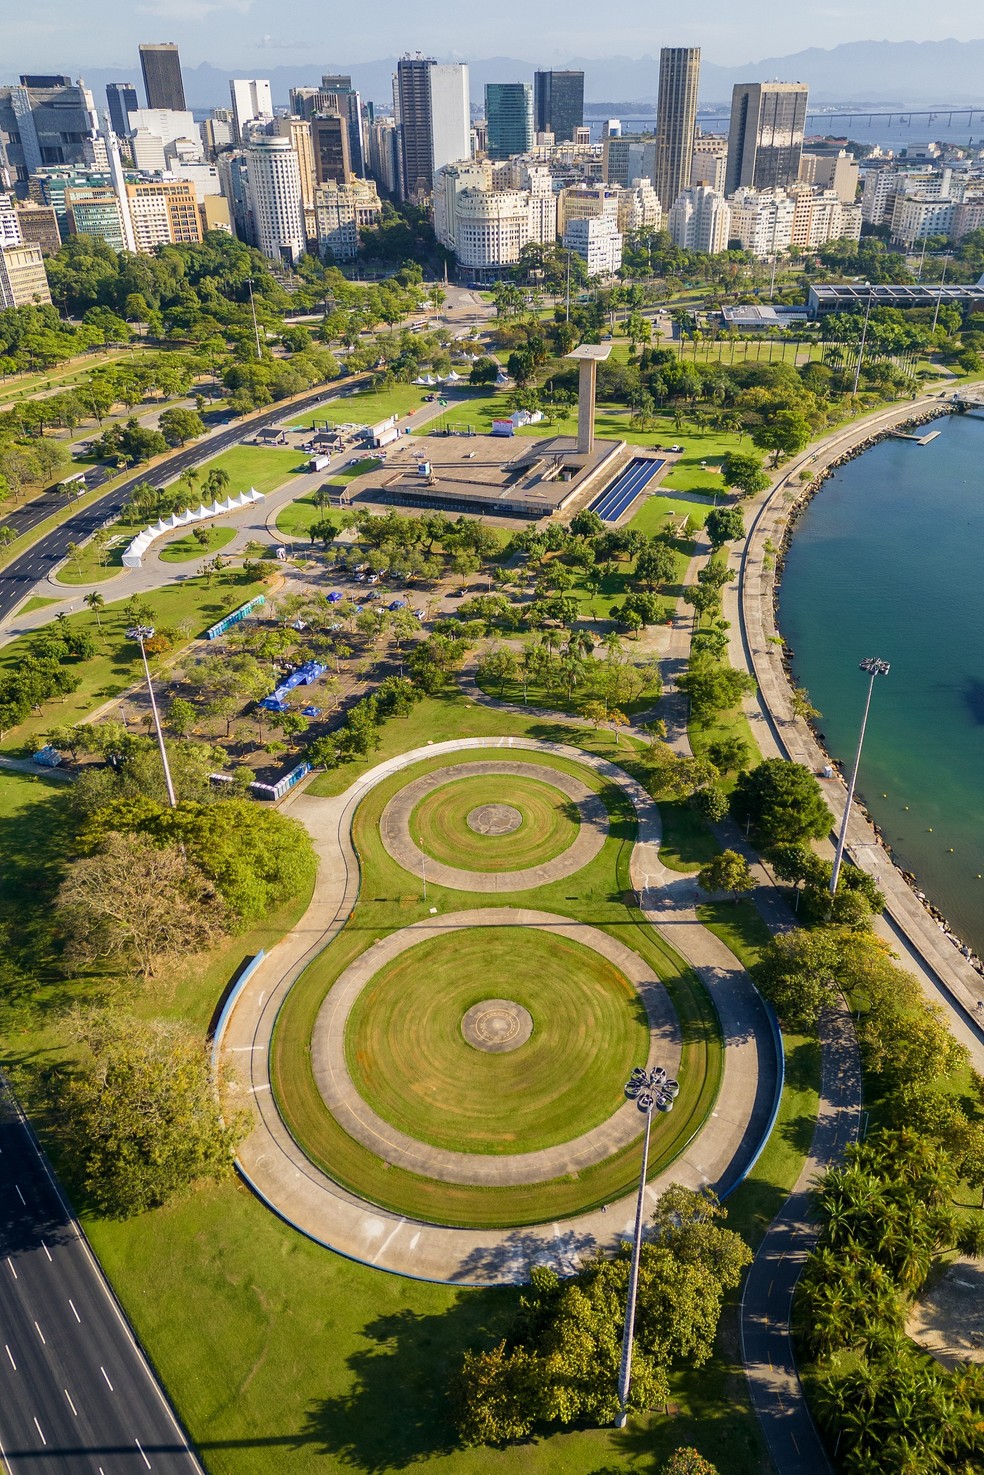 O Parque do Flamengo, no Rio de Janeiro, teve uma grande contribuição da arquiteta autodidata Lota Macedo Soares — Foto: Donatas Dabravolskas / Wikimedia Commons